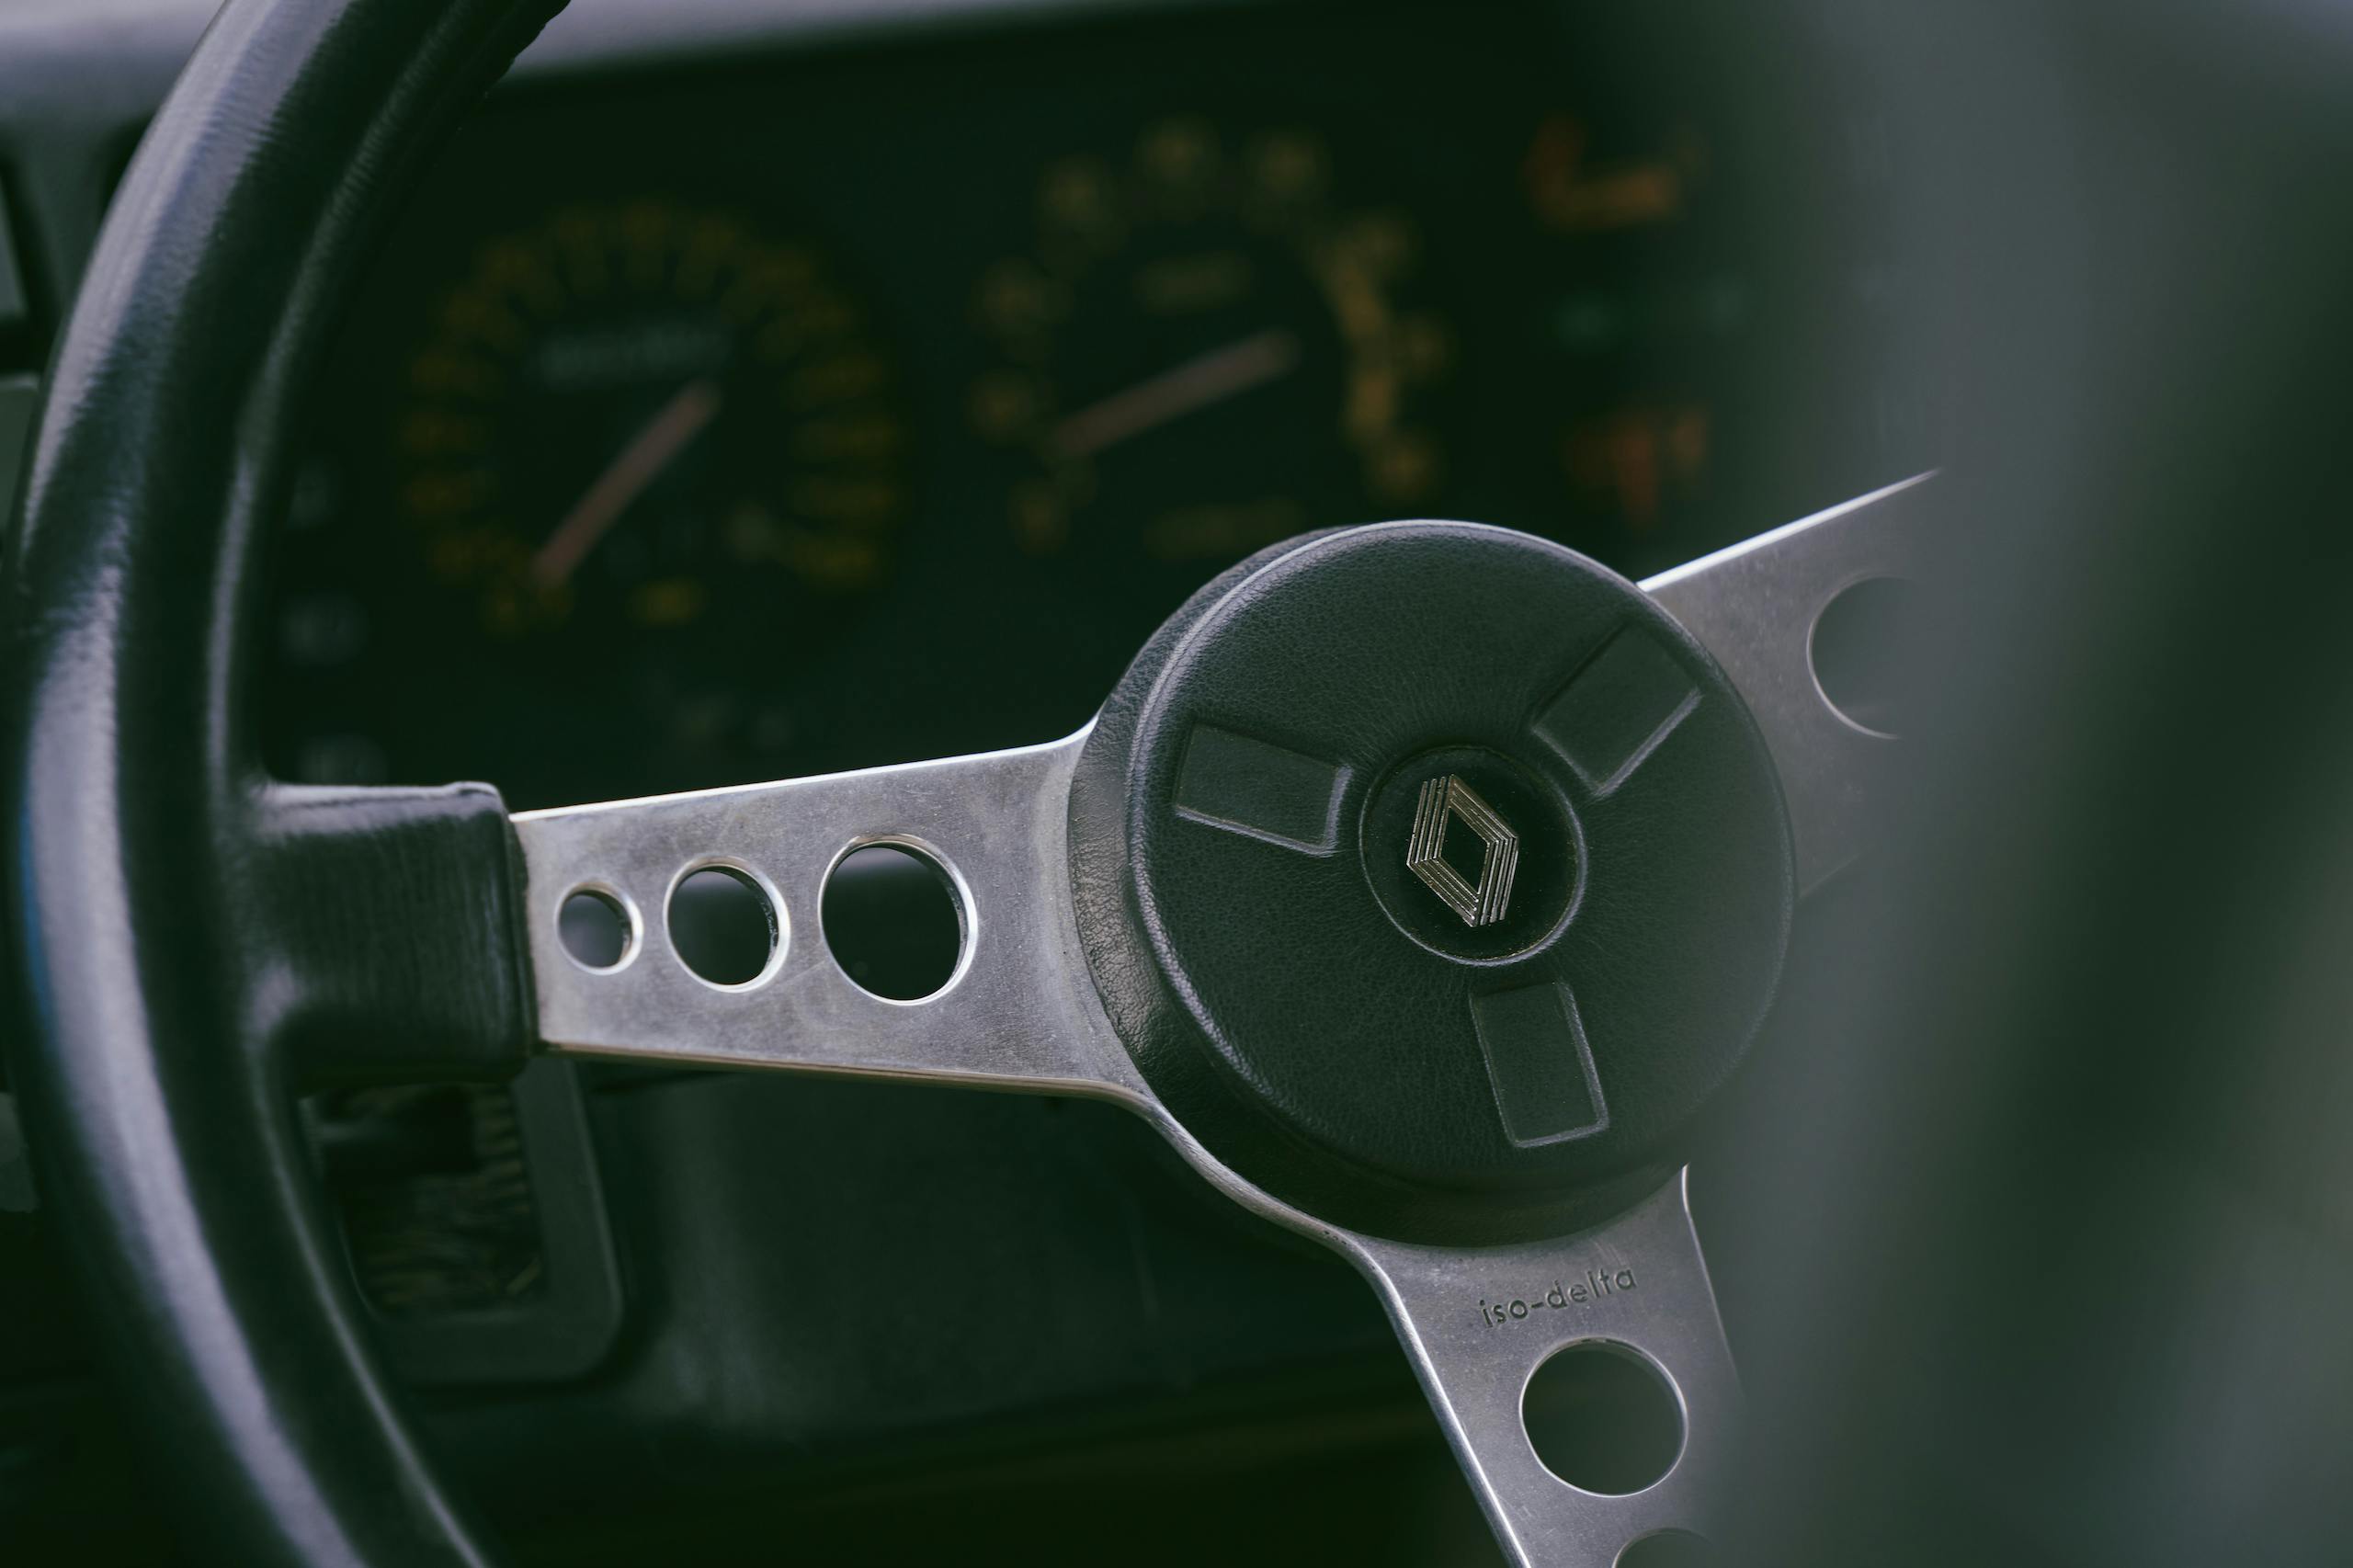 1985 Renault R5 Turbo 2 interior steering wheel detail